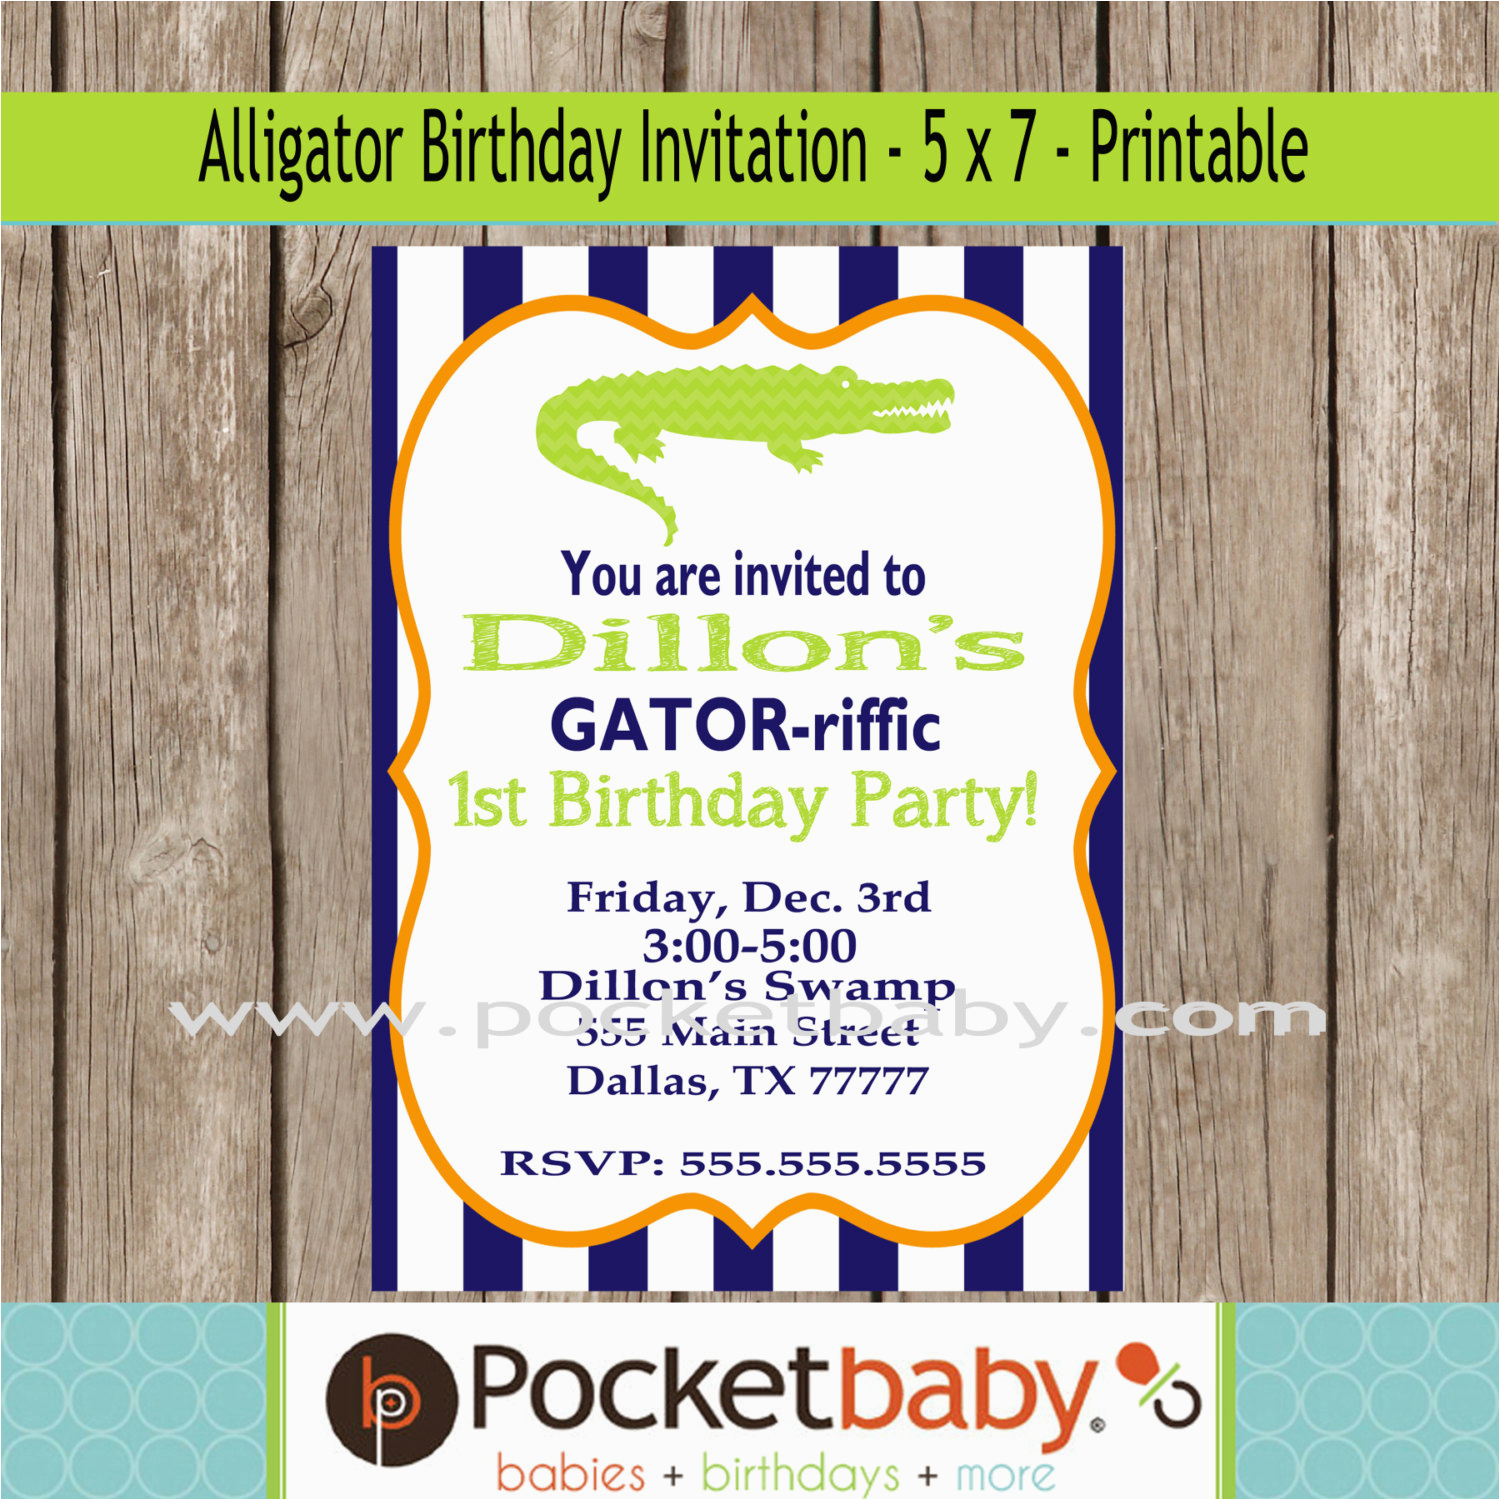 alligator birthday party invitation